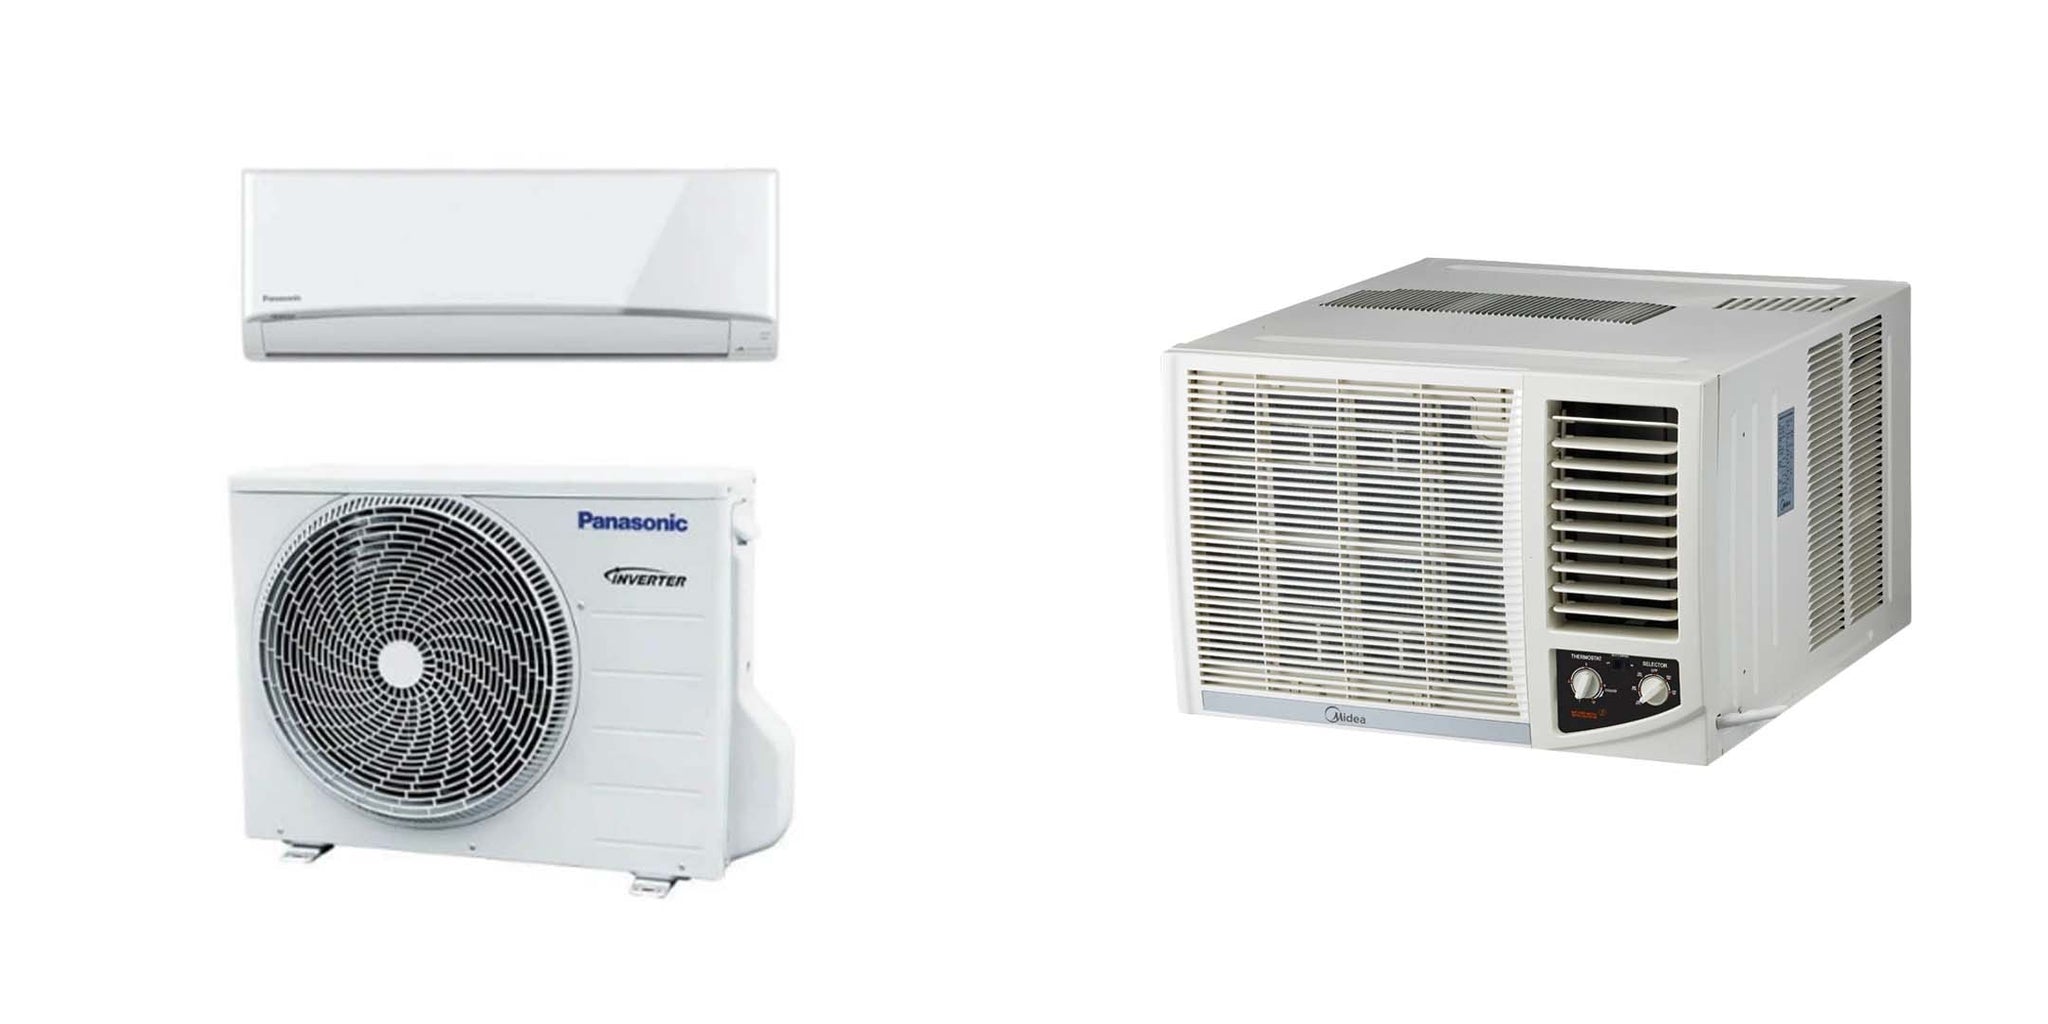 Inverter VS Non-Inverter Air Conditioner